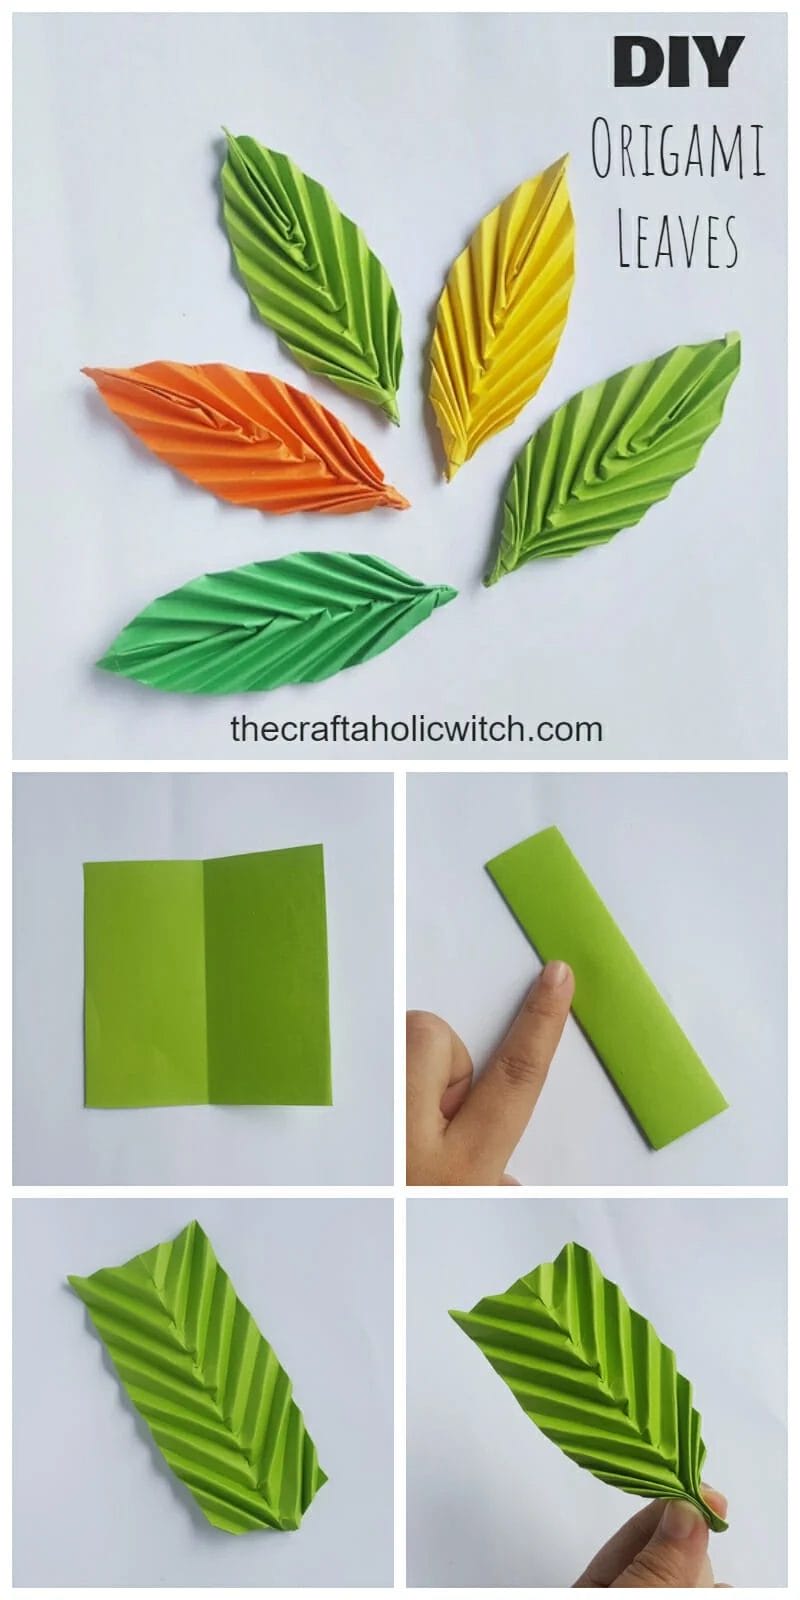 DIY origami leaves